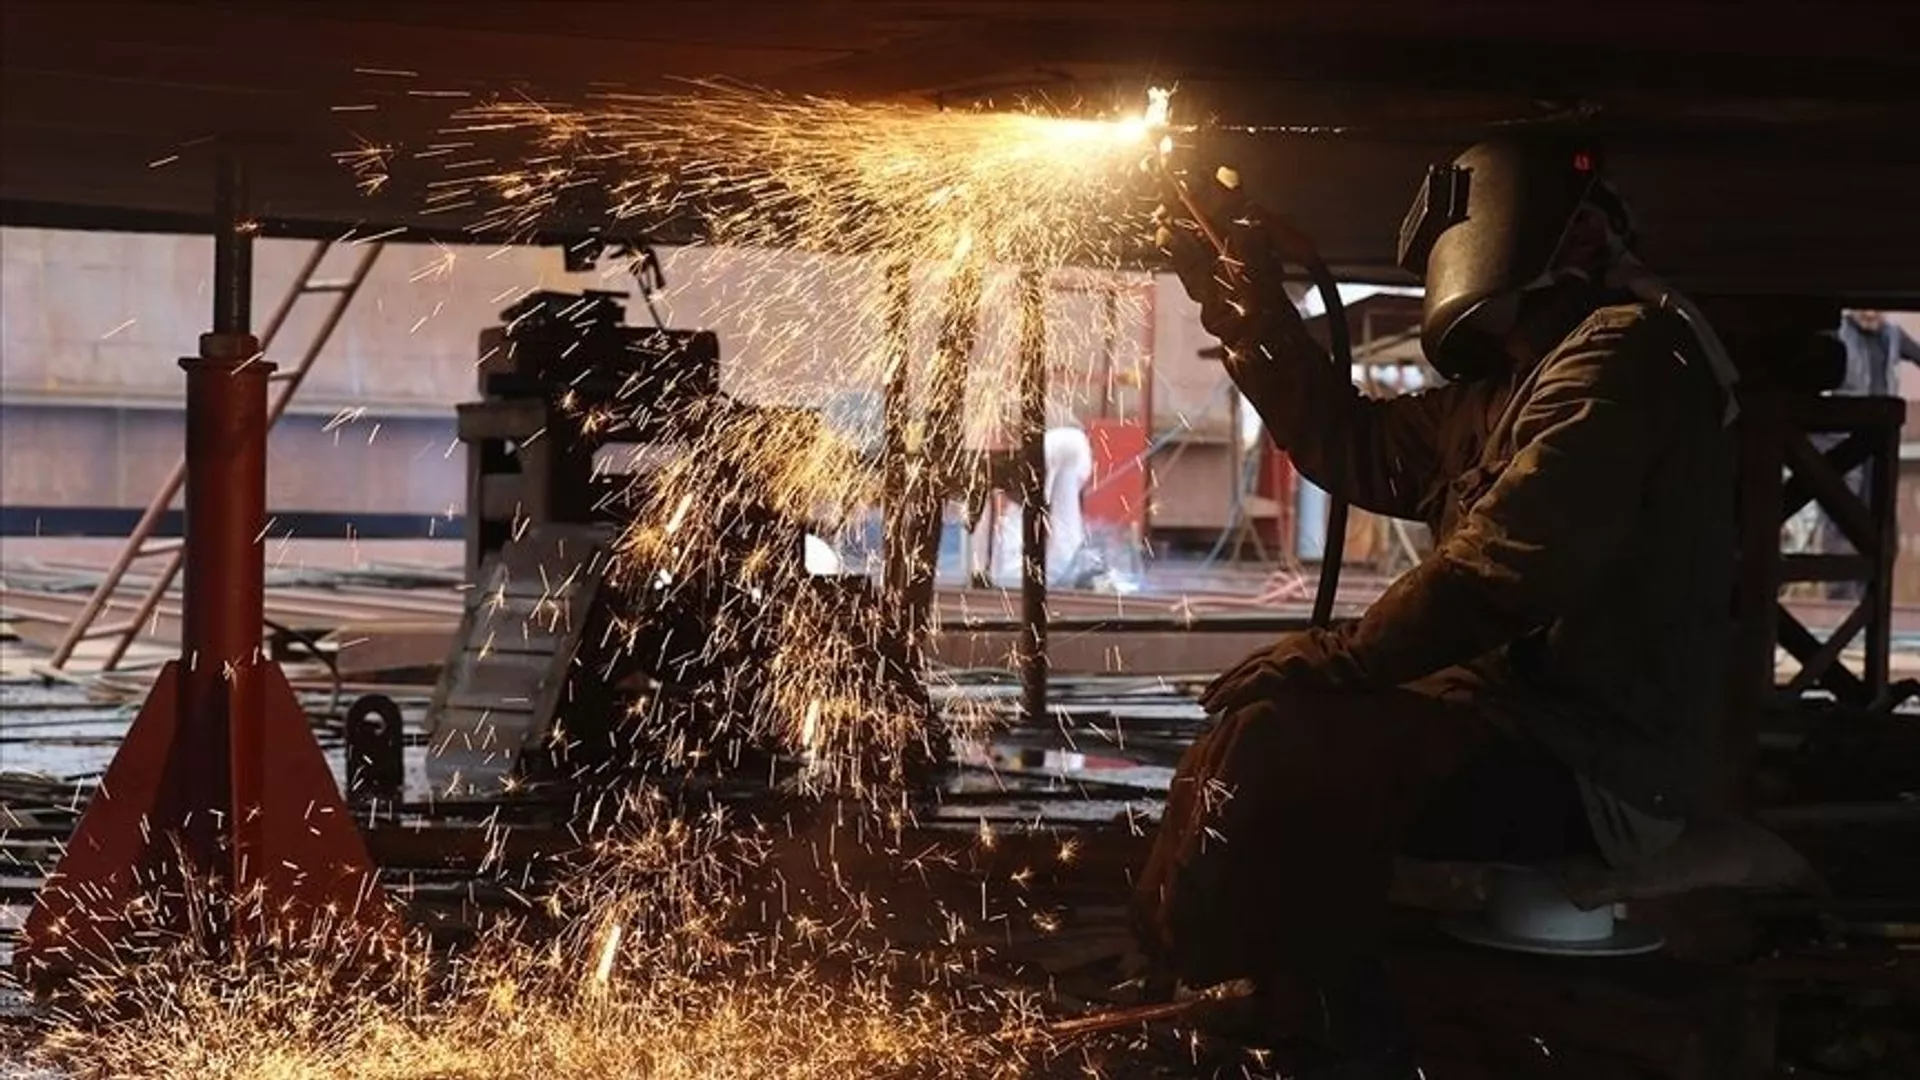 Rus metalurji şirketi MMK, Türkiye'deki tesisinden ‘mütevazı sonuçlar’ bekliyor